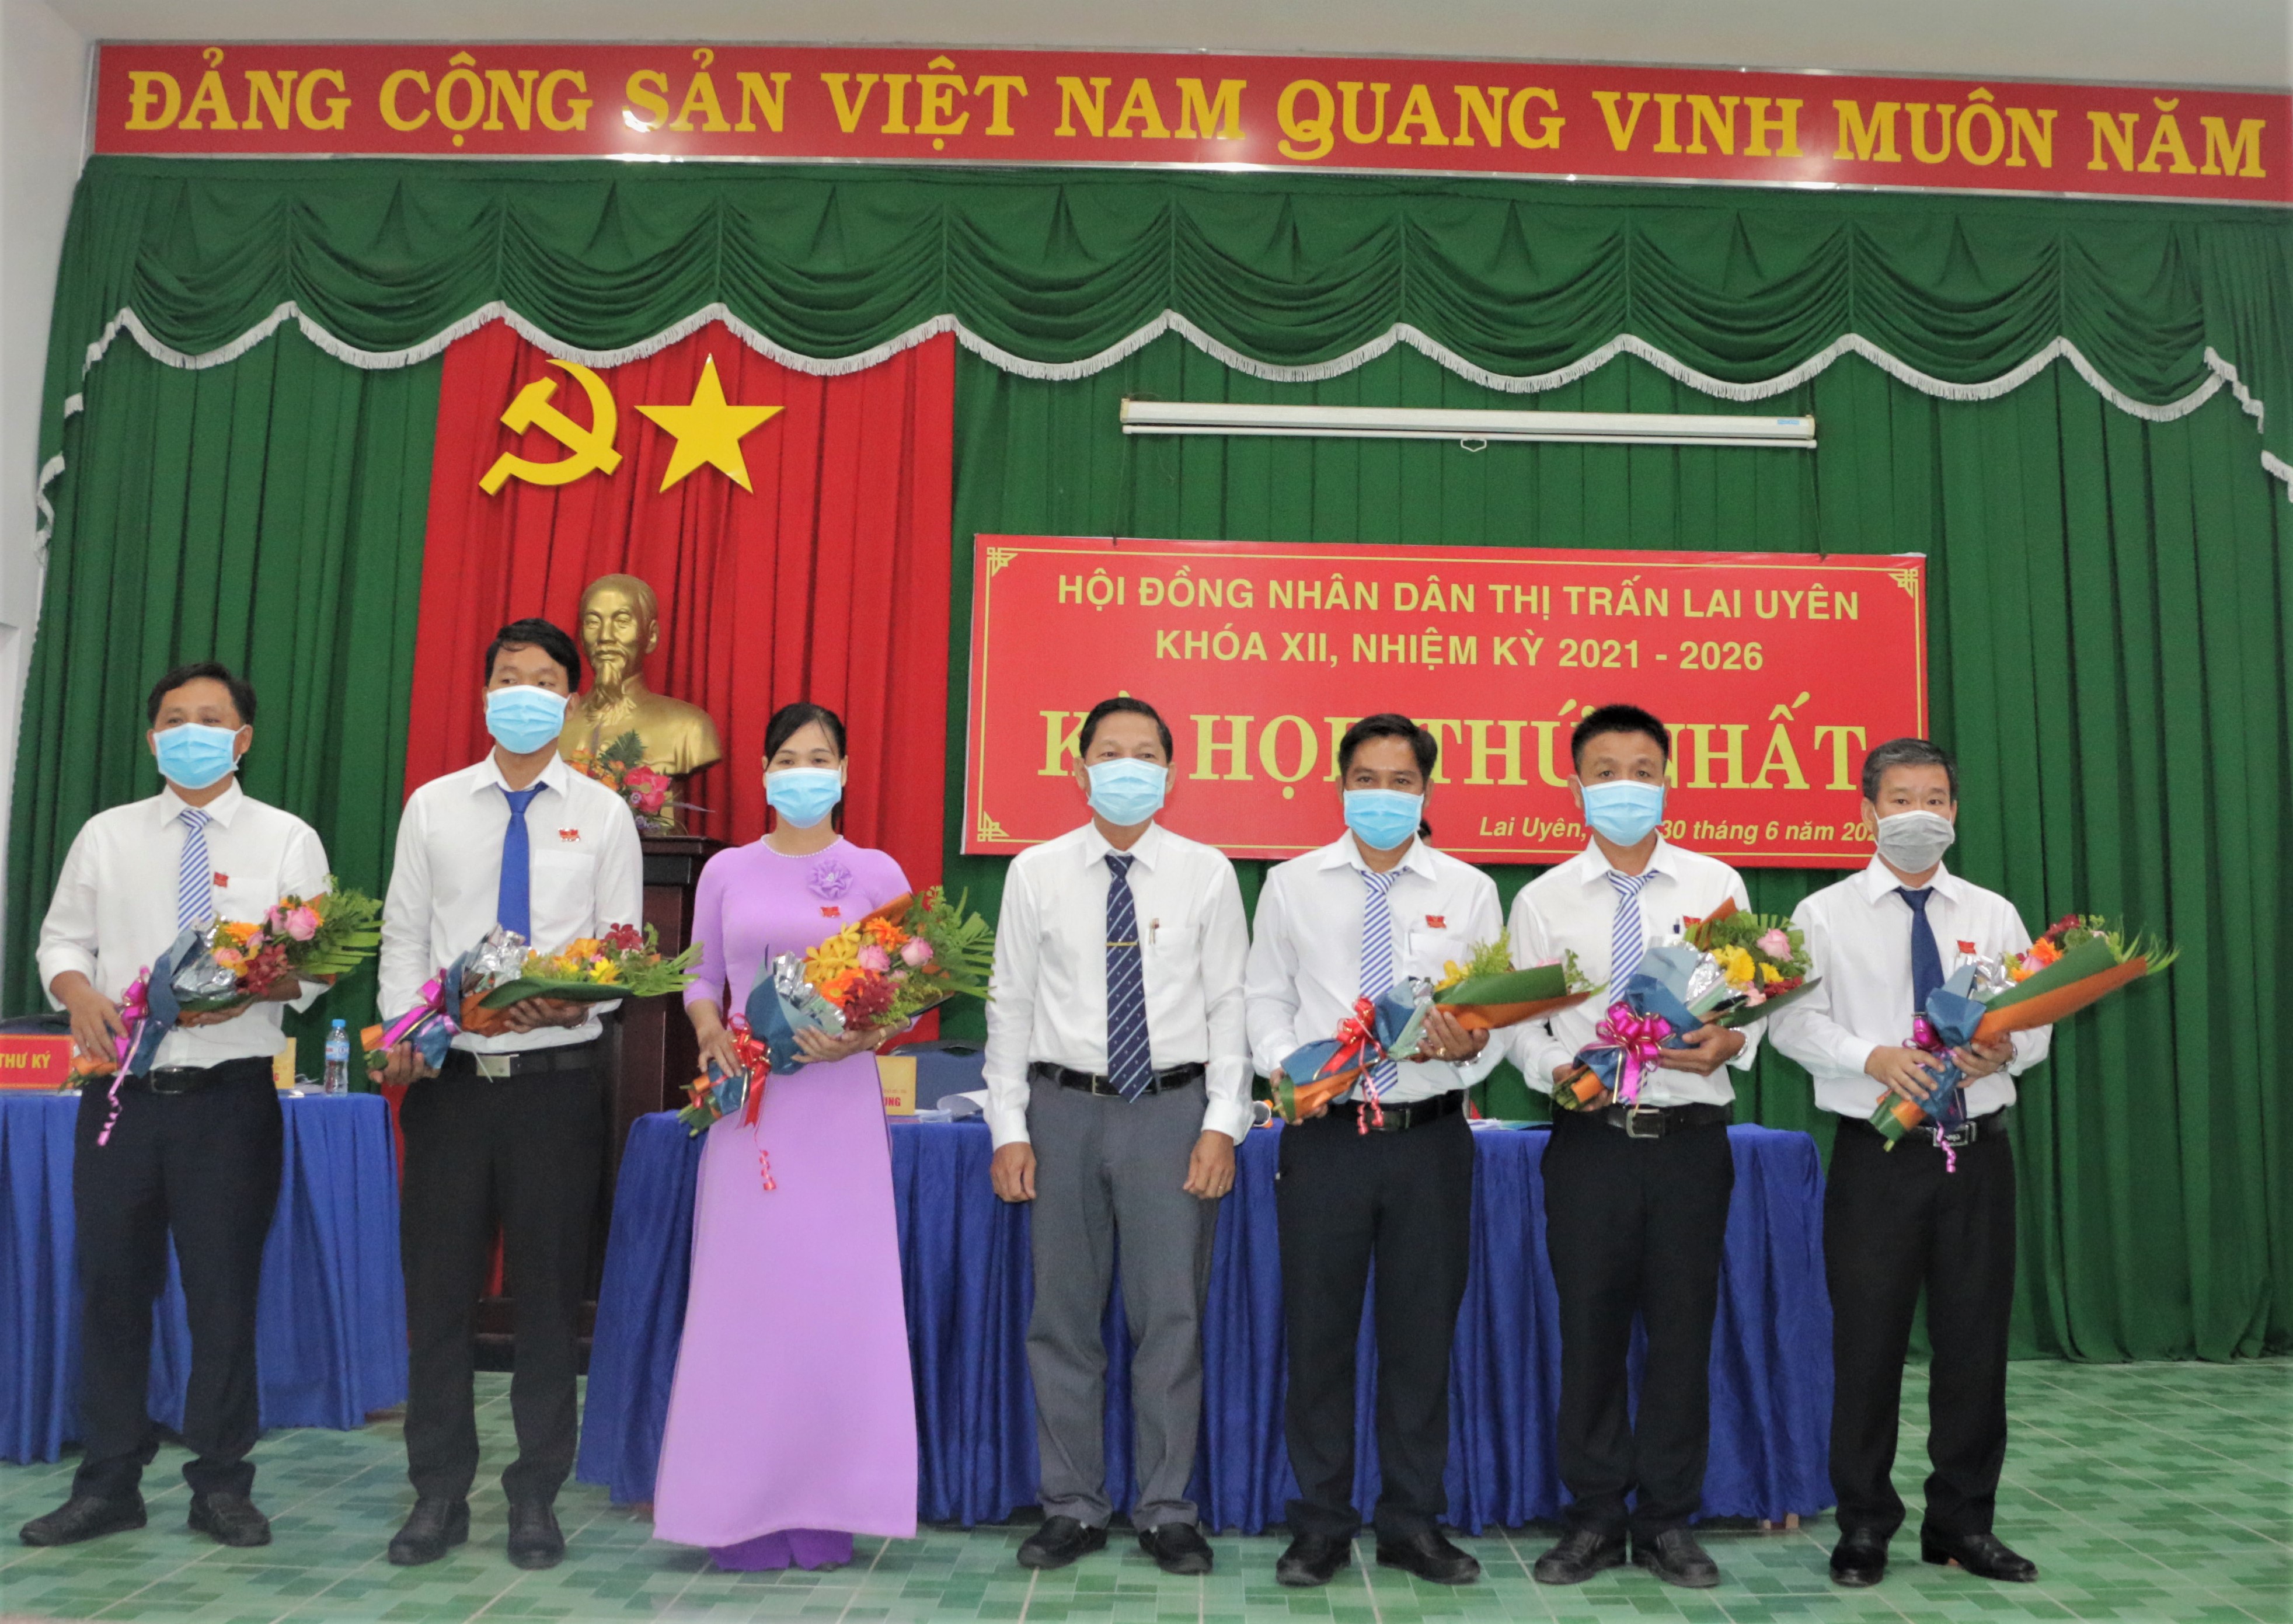 Thị trấn Lai Uyên tổ chức kỳ họp thứ nhất khóa XII, nhiệm kỳ 2021-2026